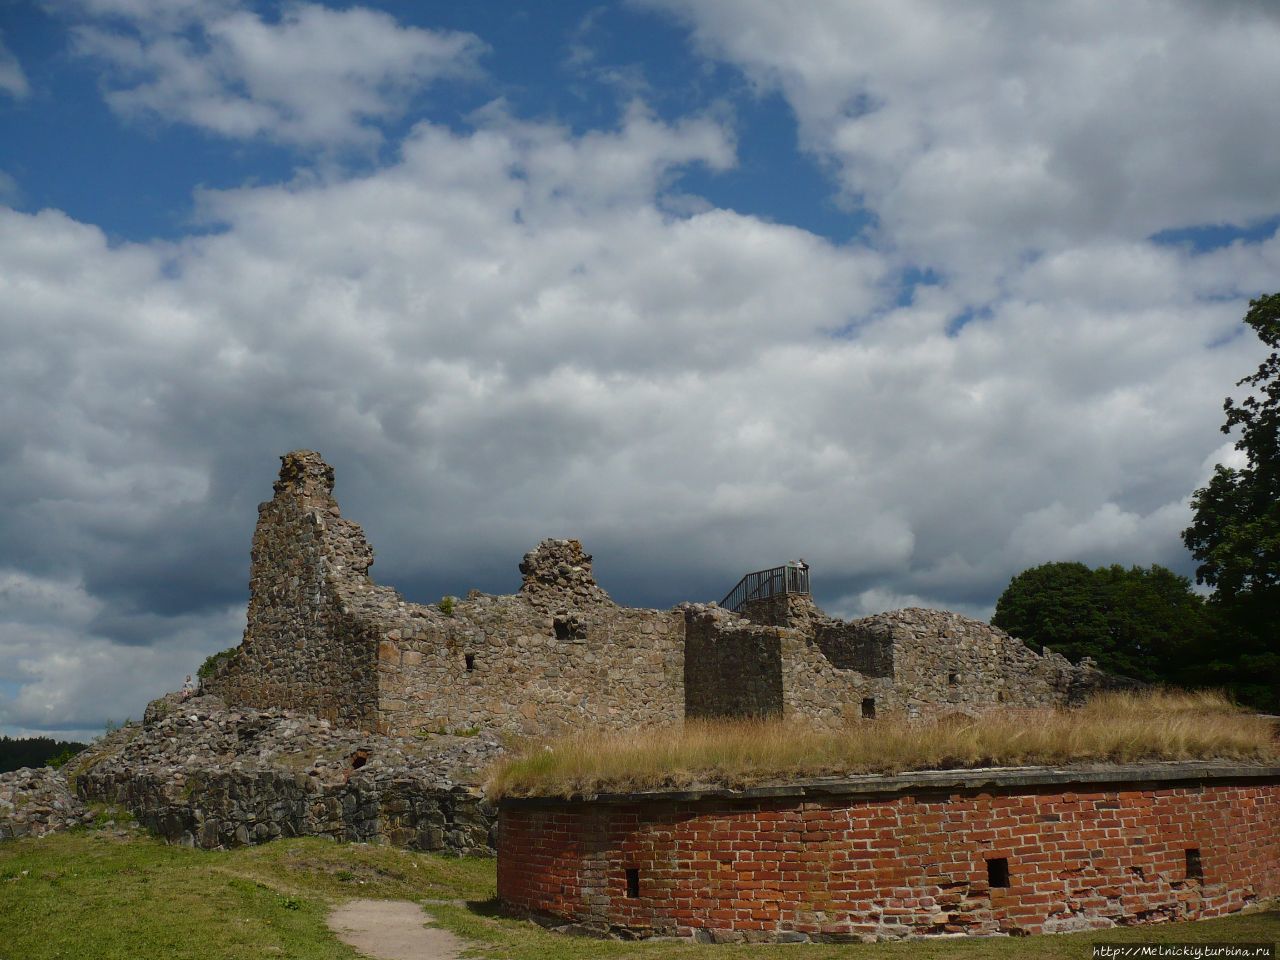 Руины епископского замка / Kuusisto Bishop's Castle Ruins